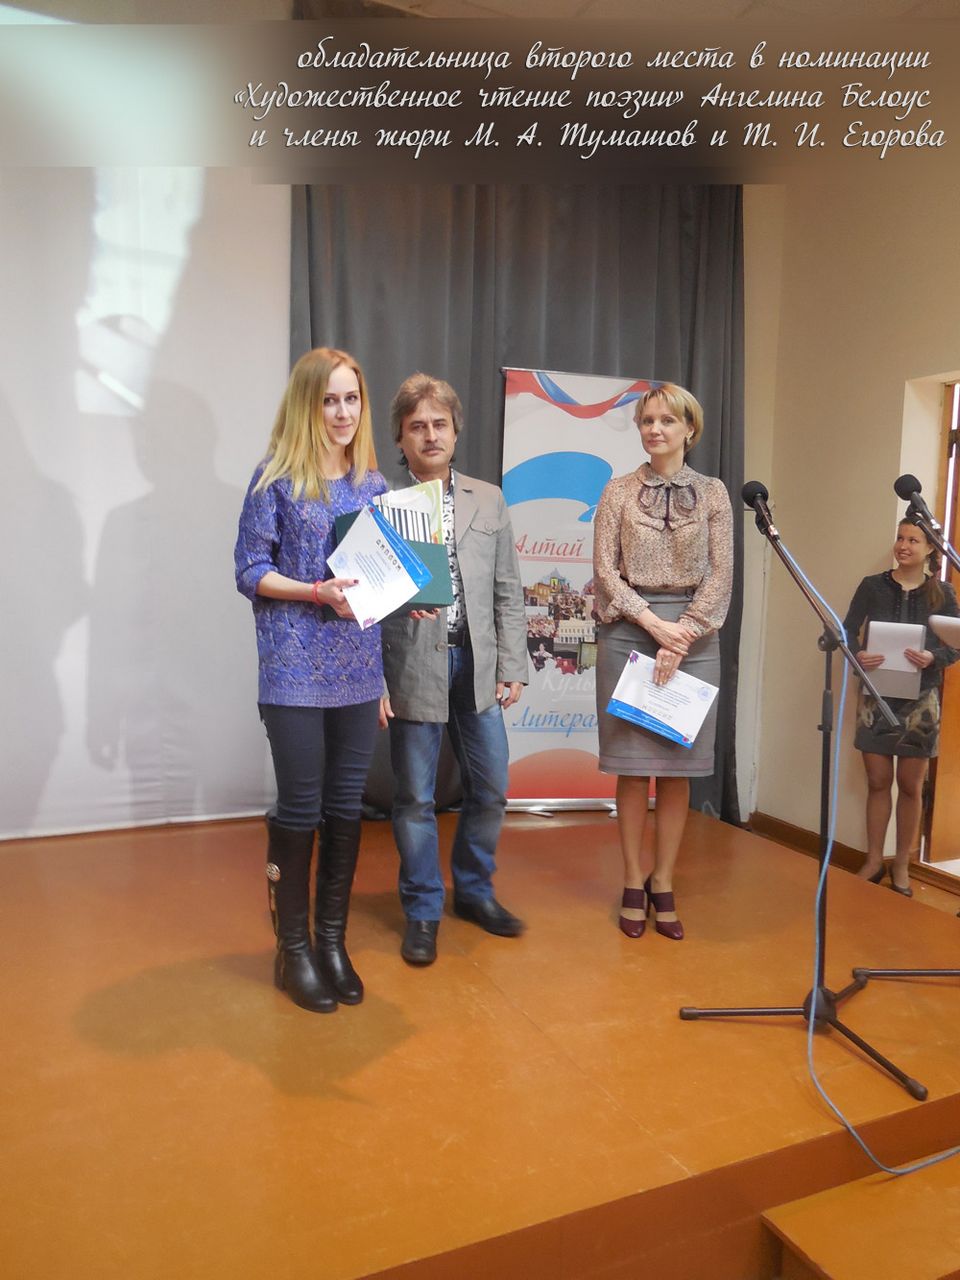 Награждение победителей краевого интернет-конкурса чтецов «Прочитаем классику вместе»